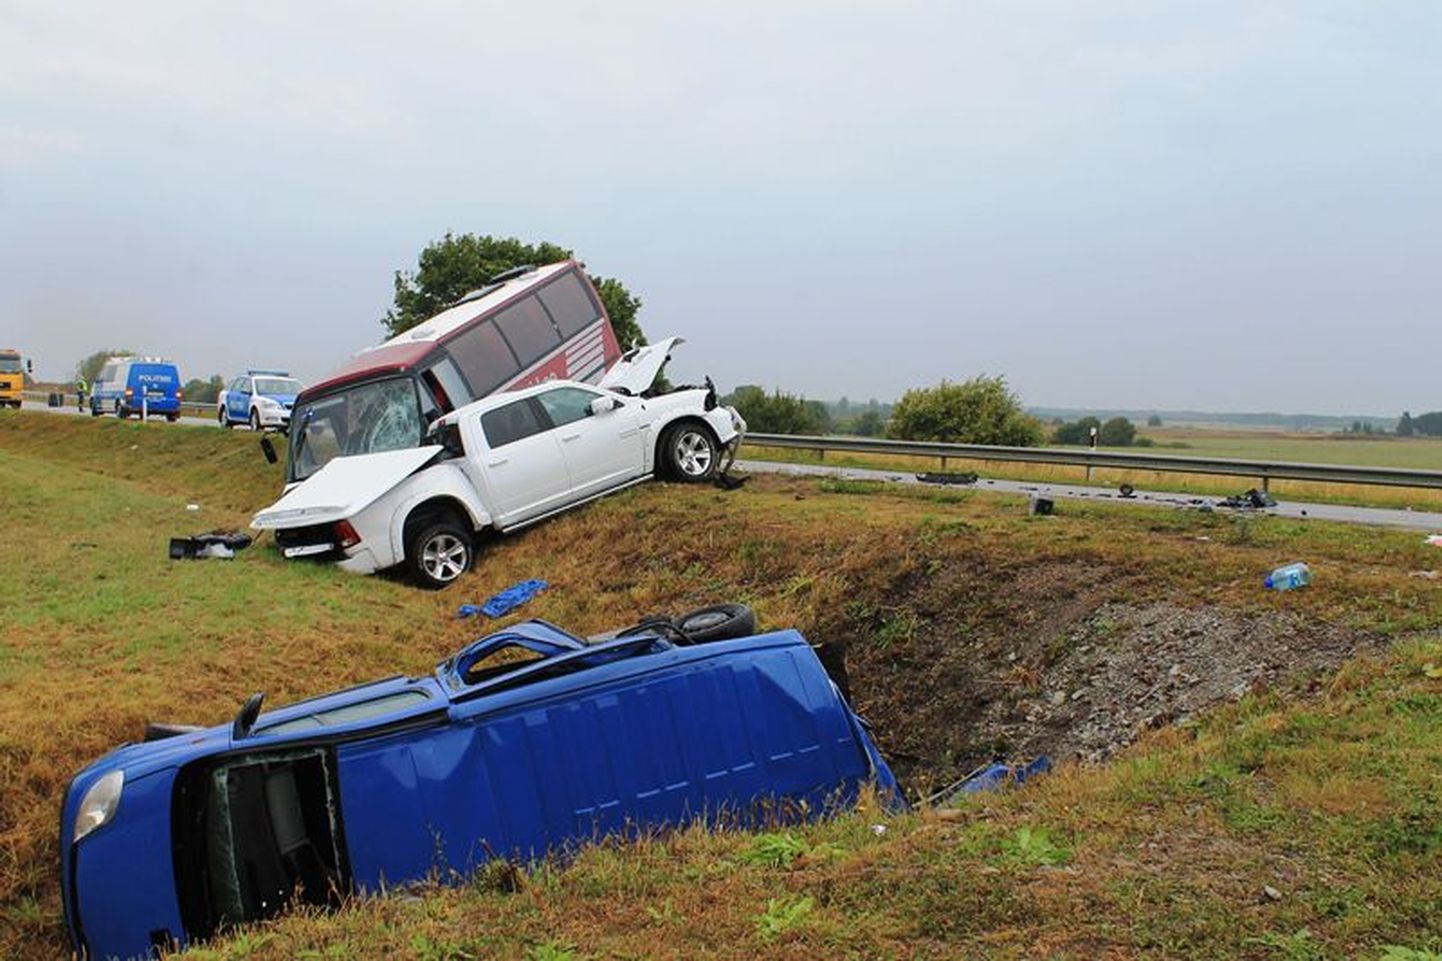 Reede ennelõunal juhtus Tallinna-Narva maantee 125. kilomeetril avarii. Õnnetuses sai vigastada 25 inimest, üks neist suri esmaspäeva hommikul haiglas.